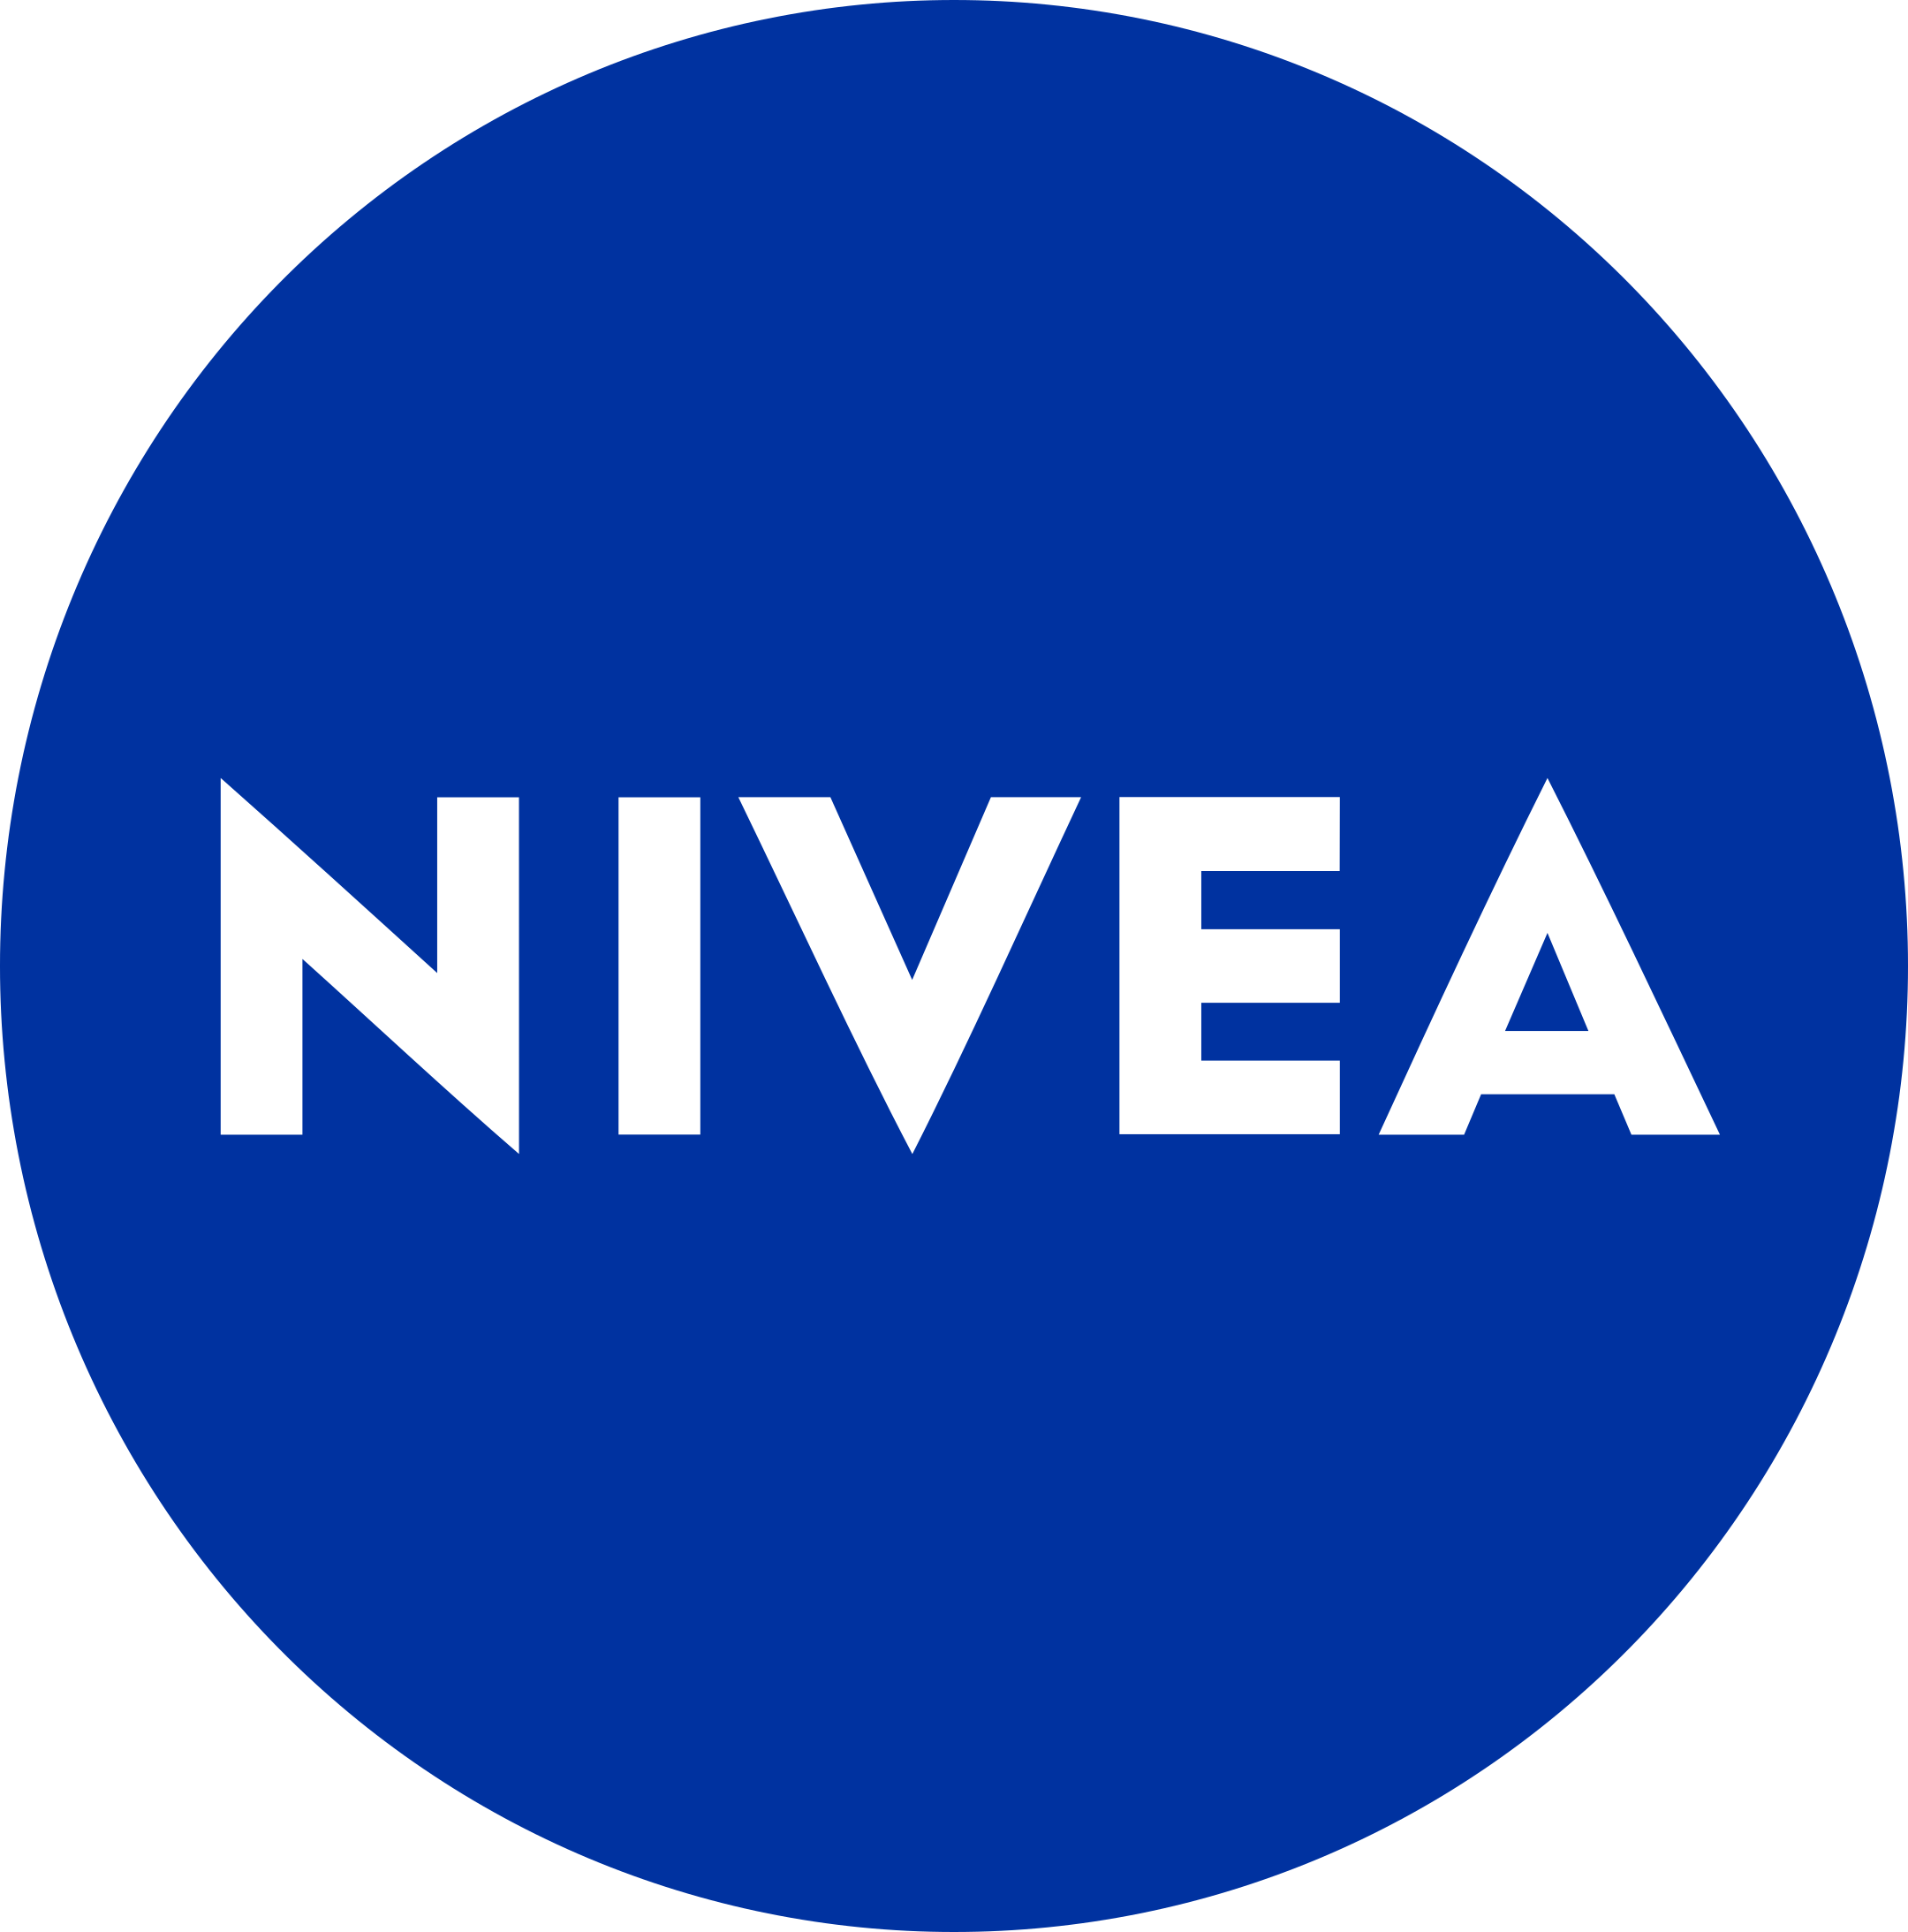 nivea logo 1 1 - Nivea Logo